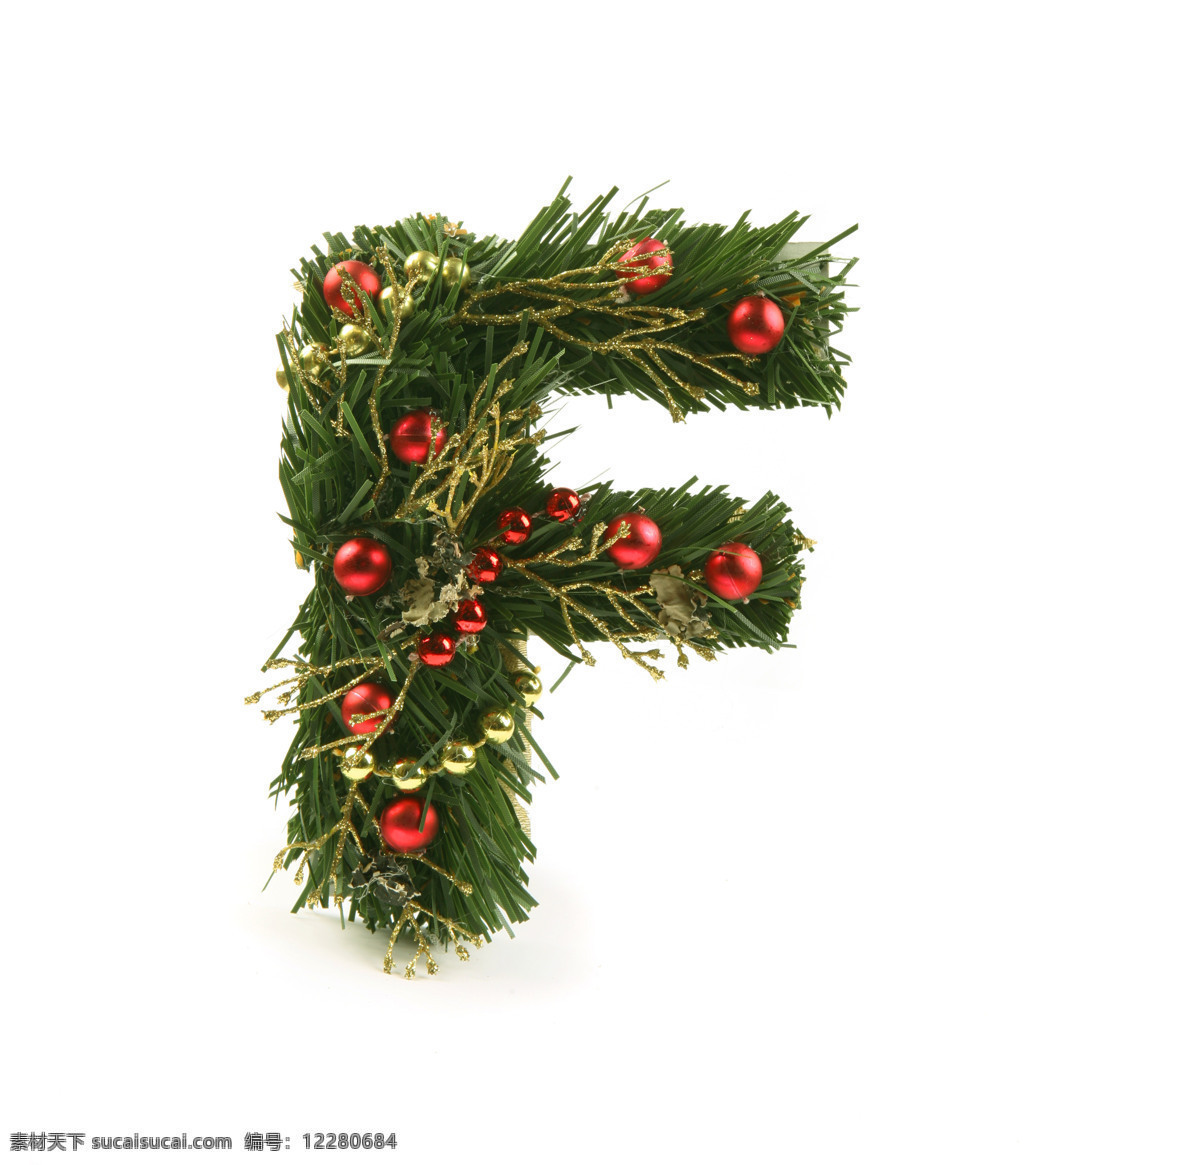 圣诞 字母 f 圣诞树 圣诞球 装饰物 字母f 英文 艺术 字体 圣诞节 节日素材 书画文字 文化艺术